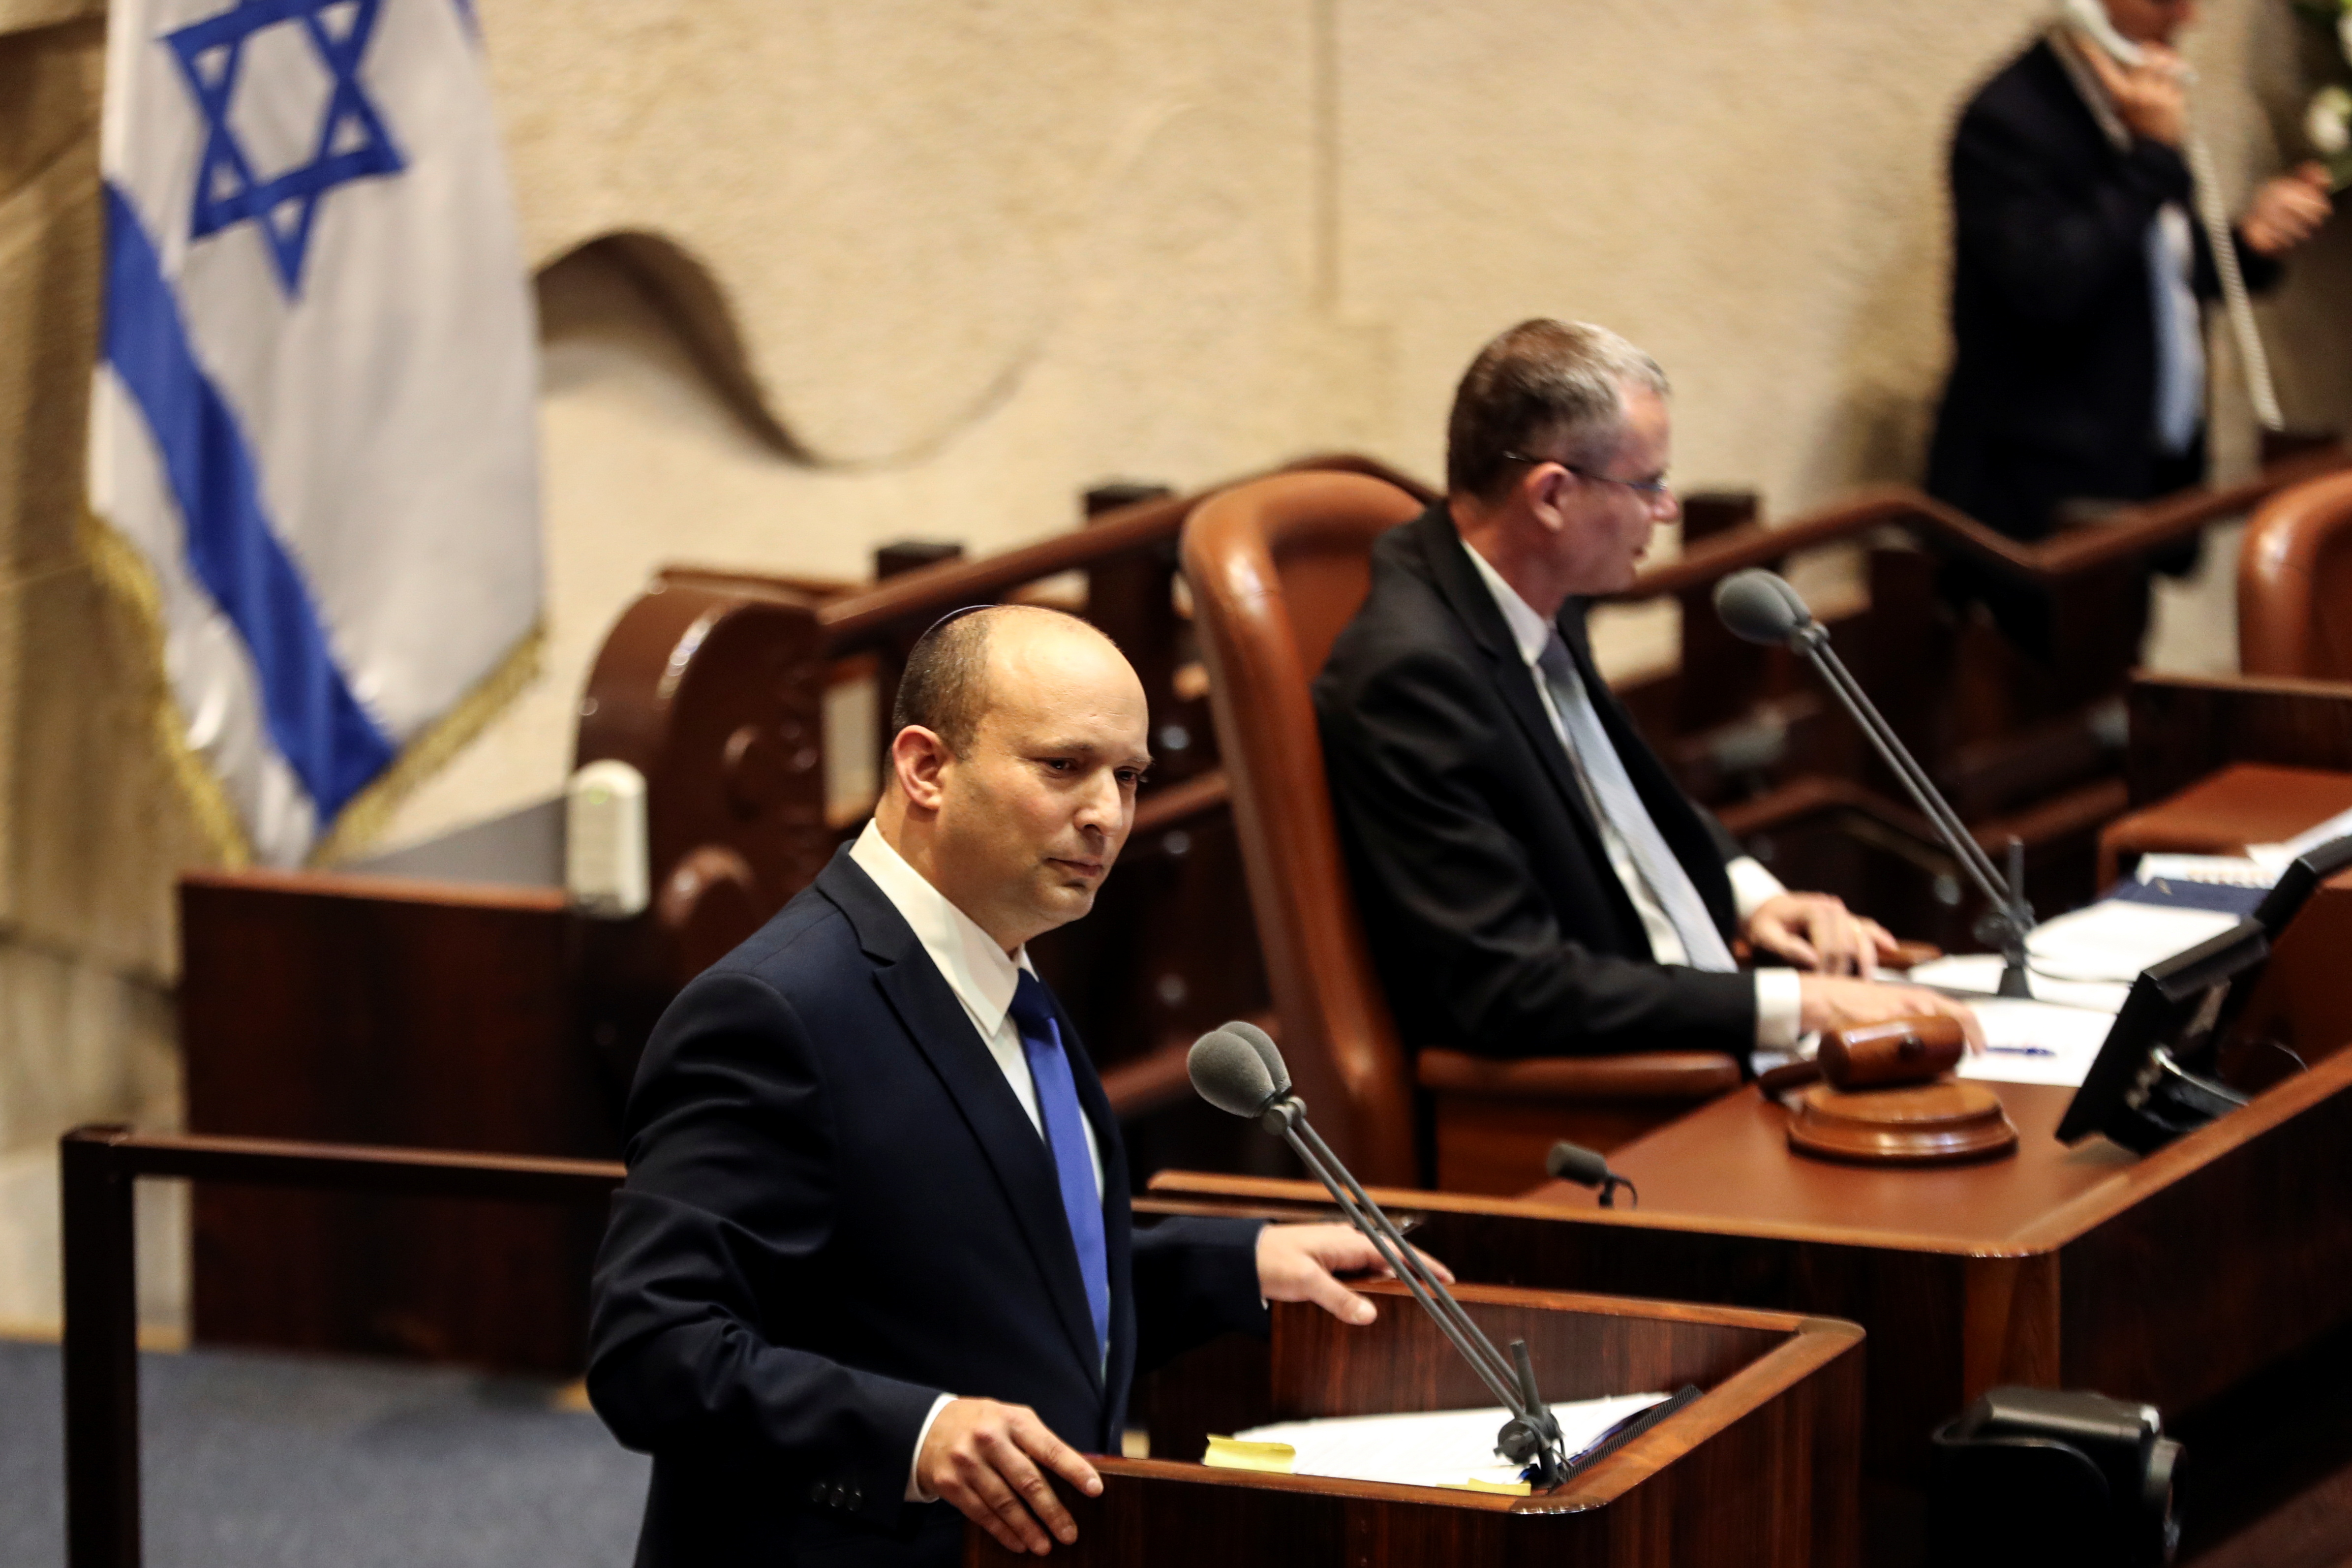 Naftali Bennett, primer ministro designado, habla en la Knesset, el parlamento de Israel, durante una sesión especial en la que se celebrará una votación de confianza para aprobar y jurar un nuevo gobierno de coalición, en Jerusalén el 13 de junio de 2021. REUTERS/Ronen Zvulun